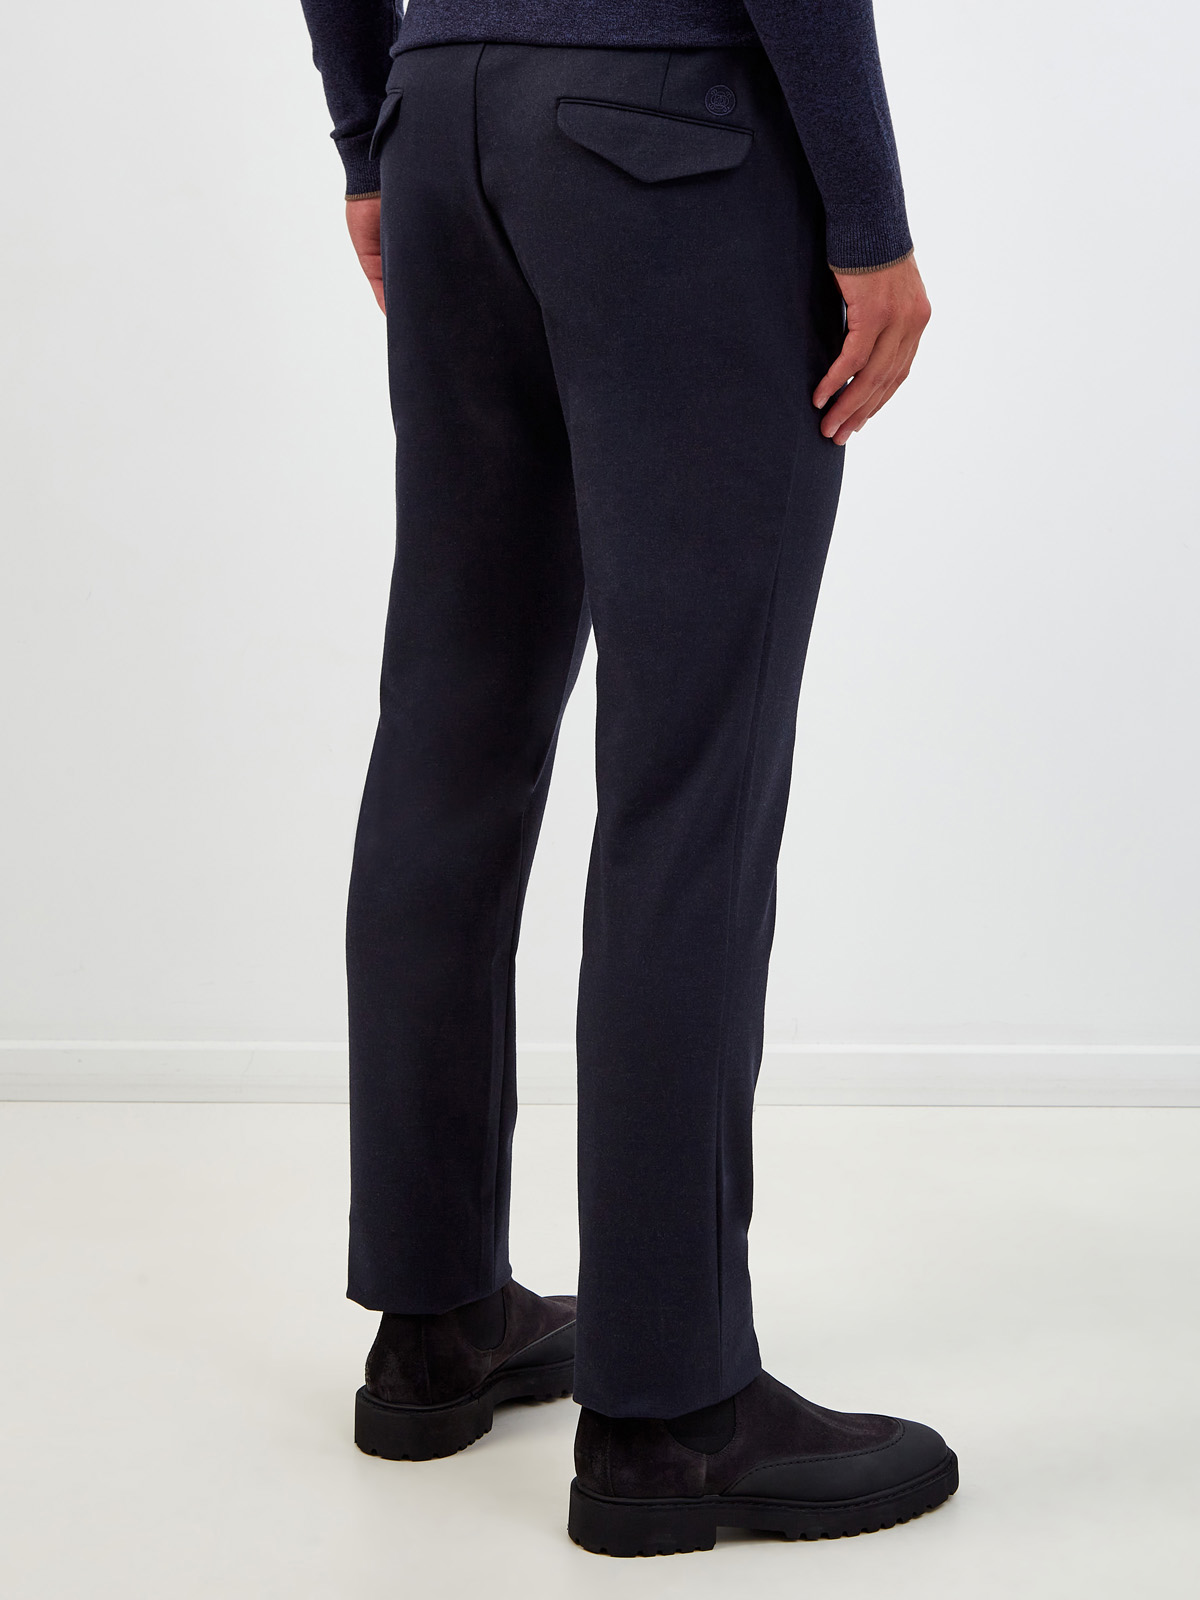 Шерстяные брюки с поясом на кулиске и вышитым логотипом CUDGI, цвет синий, размер 50;54;58;60;62 - фото 4